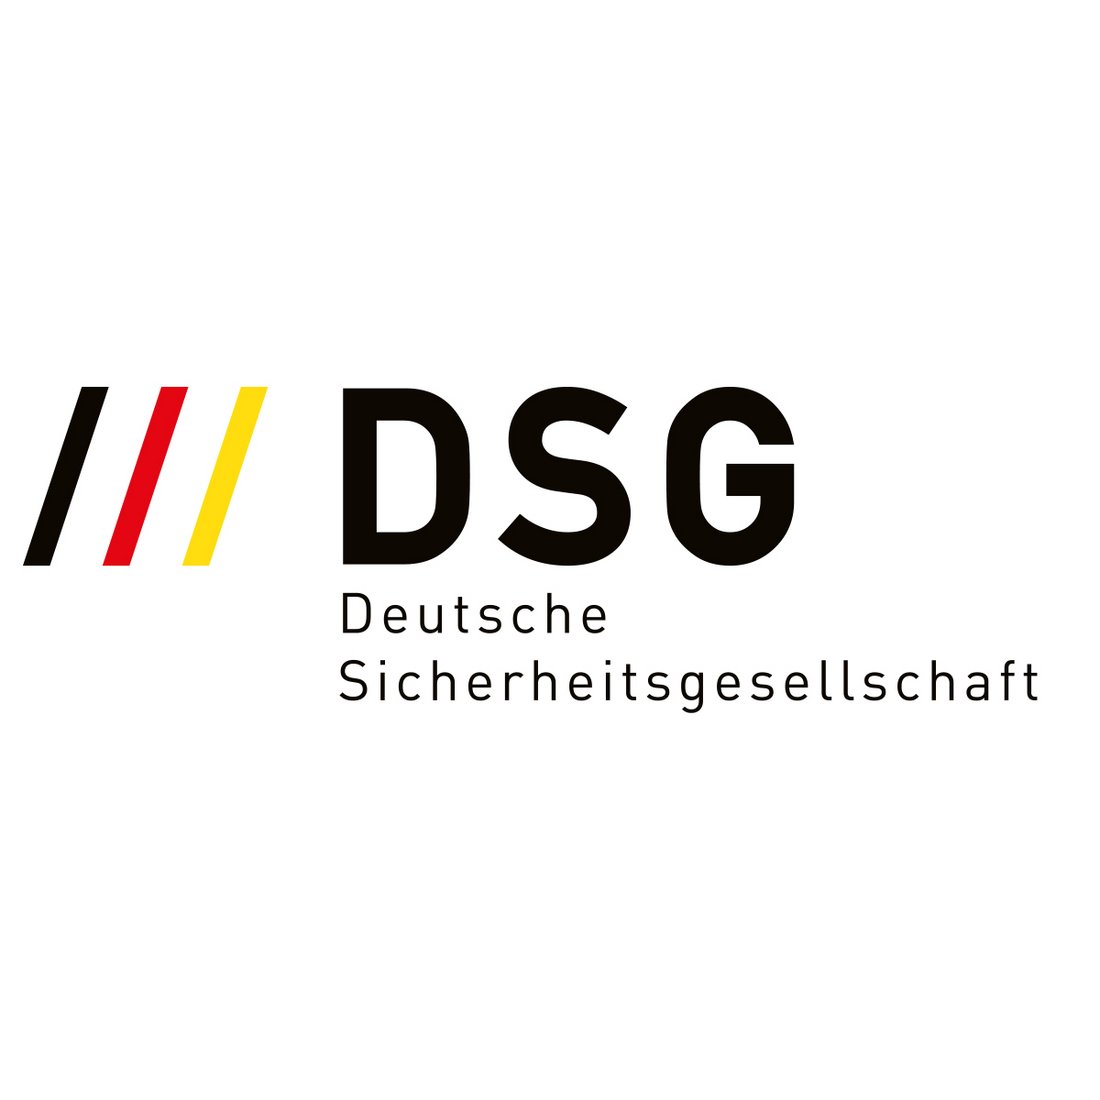 Deutsche Sicherheitsgesellschaft